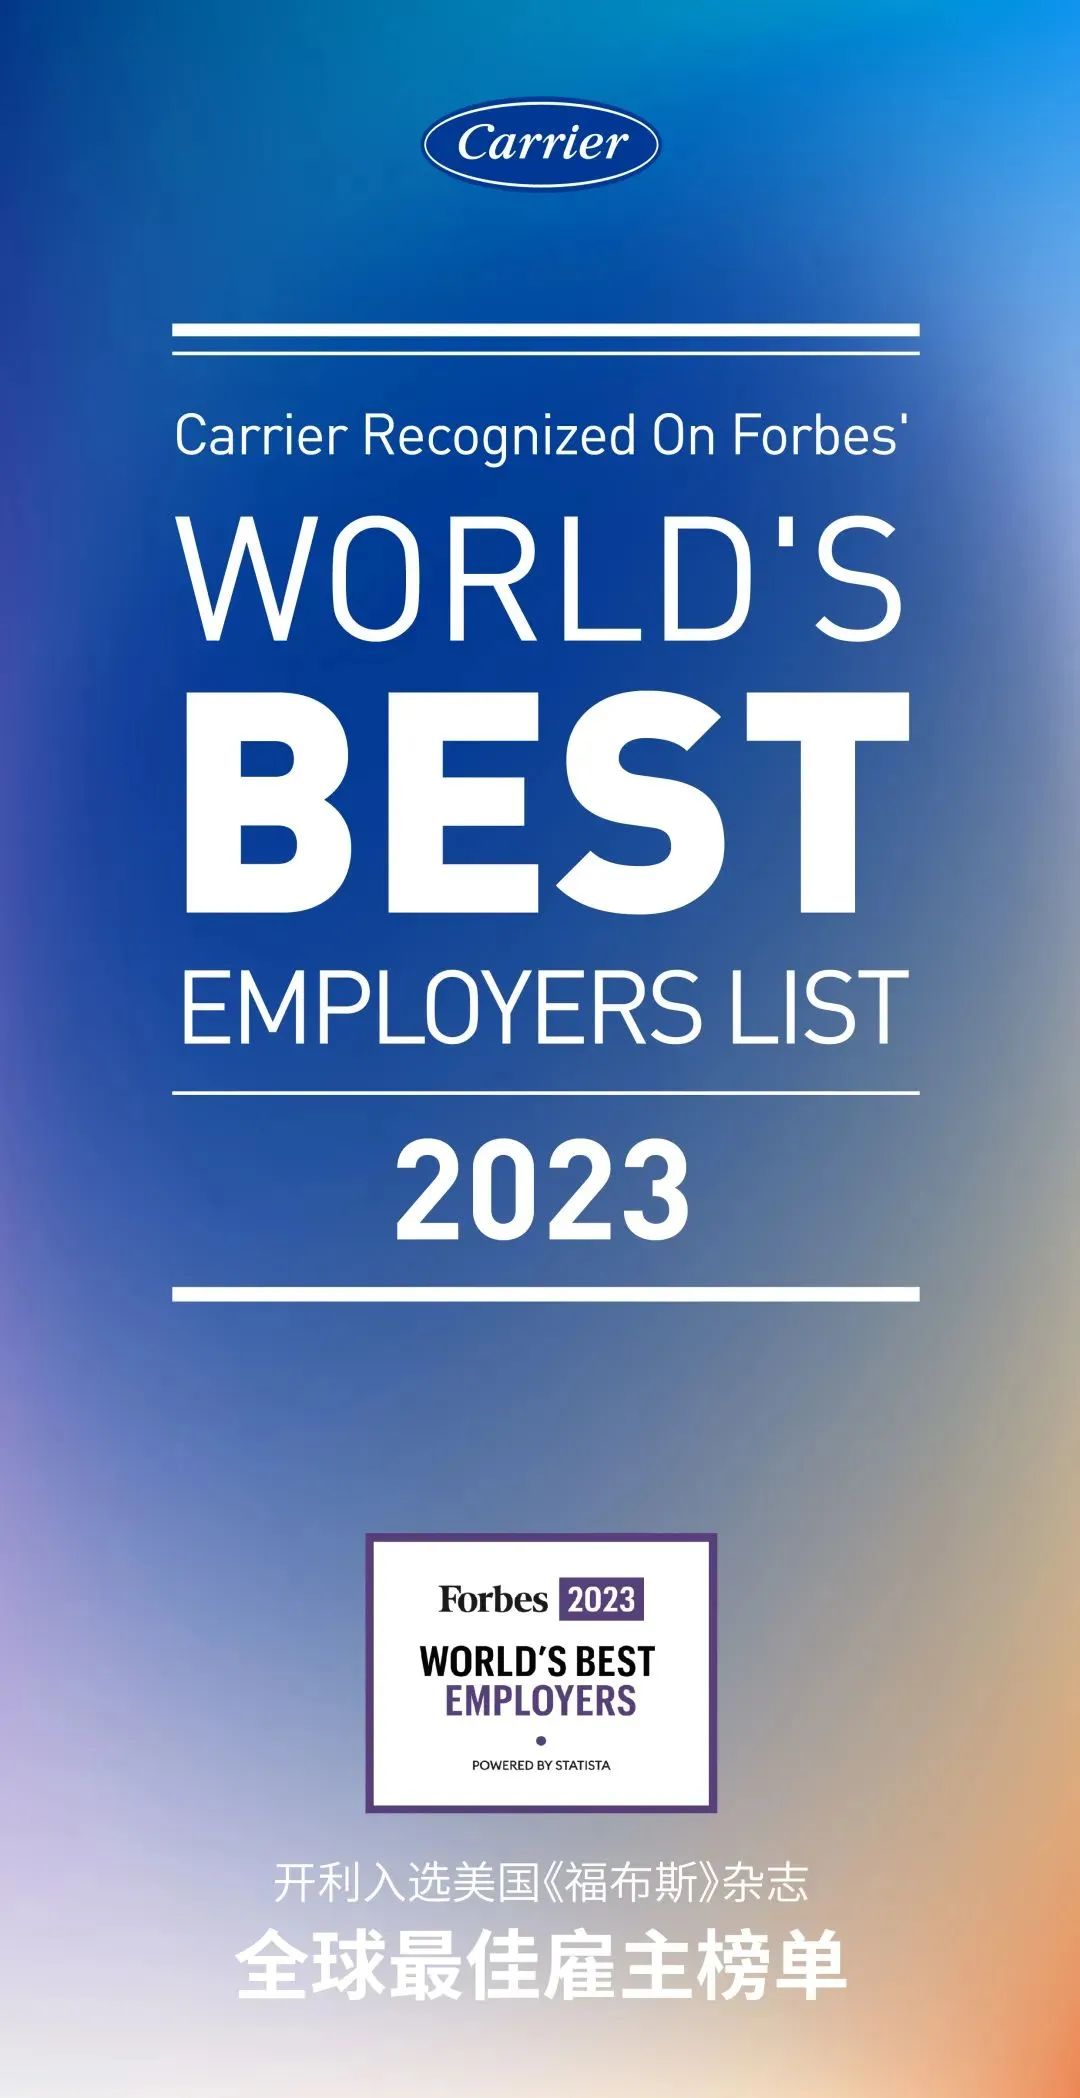 开利入选美国《福布斯》2023年全球最佳雇主榜单